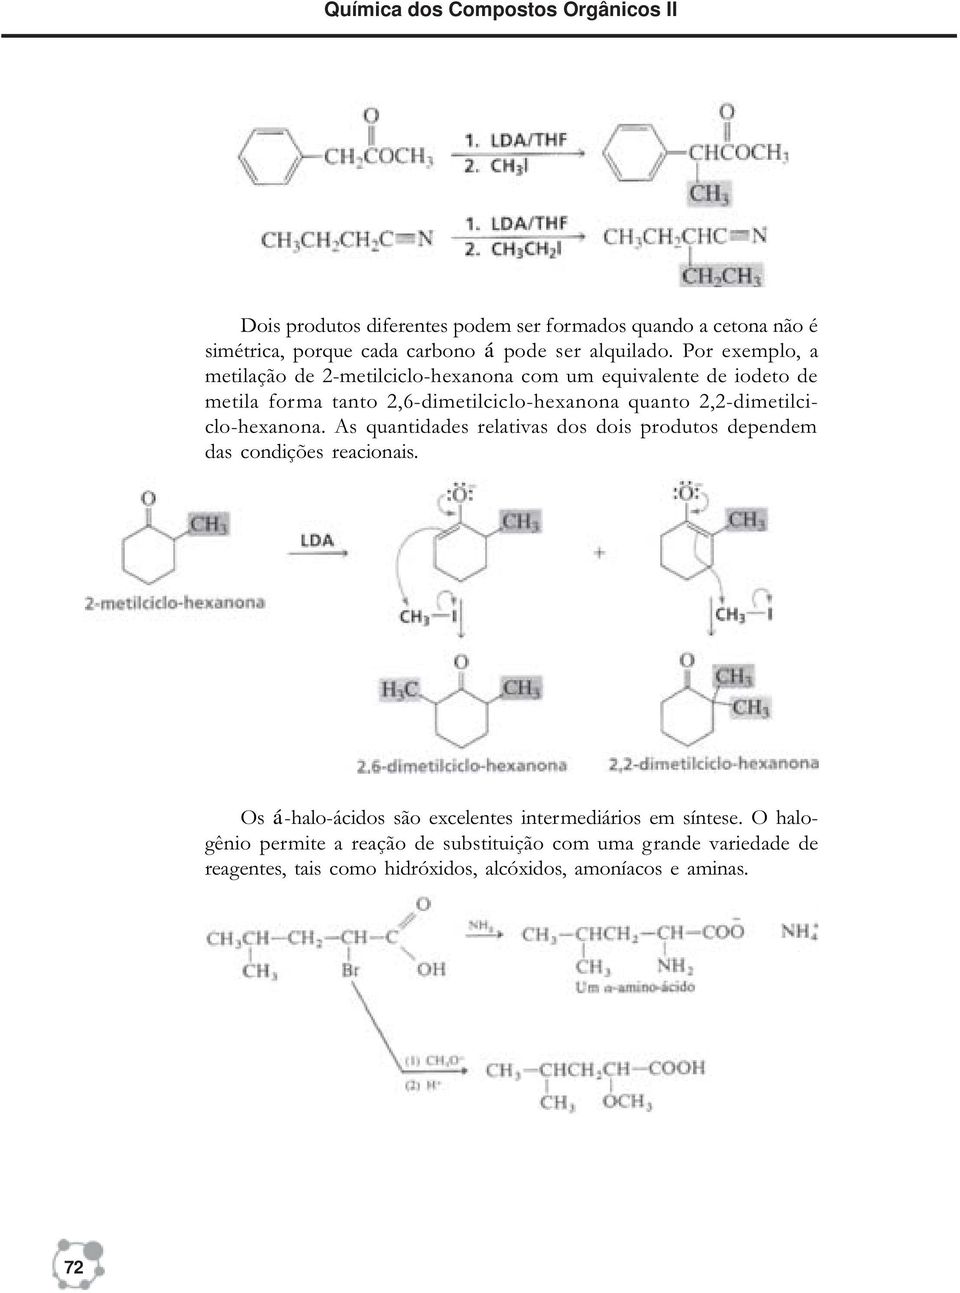 Por exemplo, a metilação de 2-metilciclo-hexanona com um equivalente de iodeto de metila forma tanto 2,6-dimetilciclo-hexanona quanto